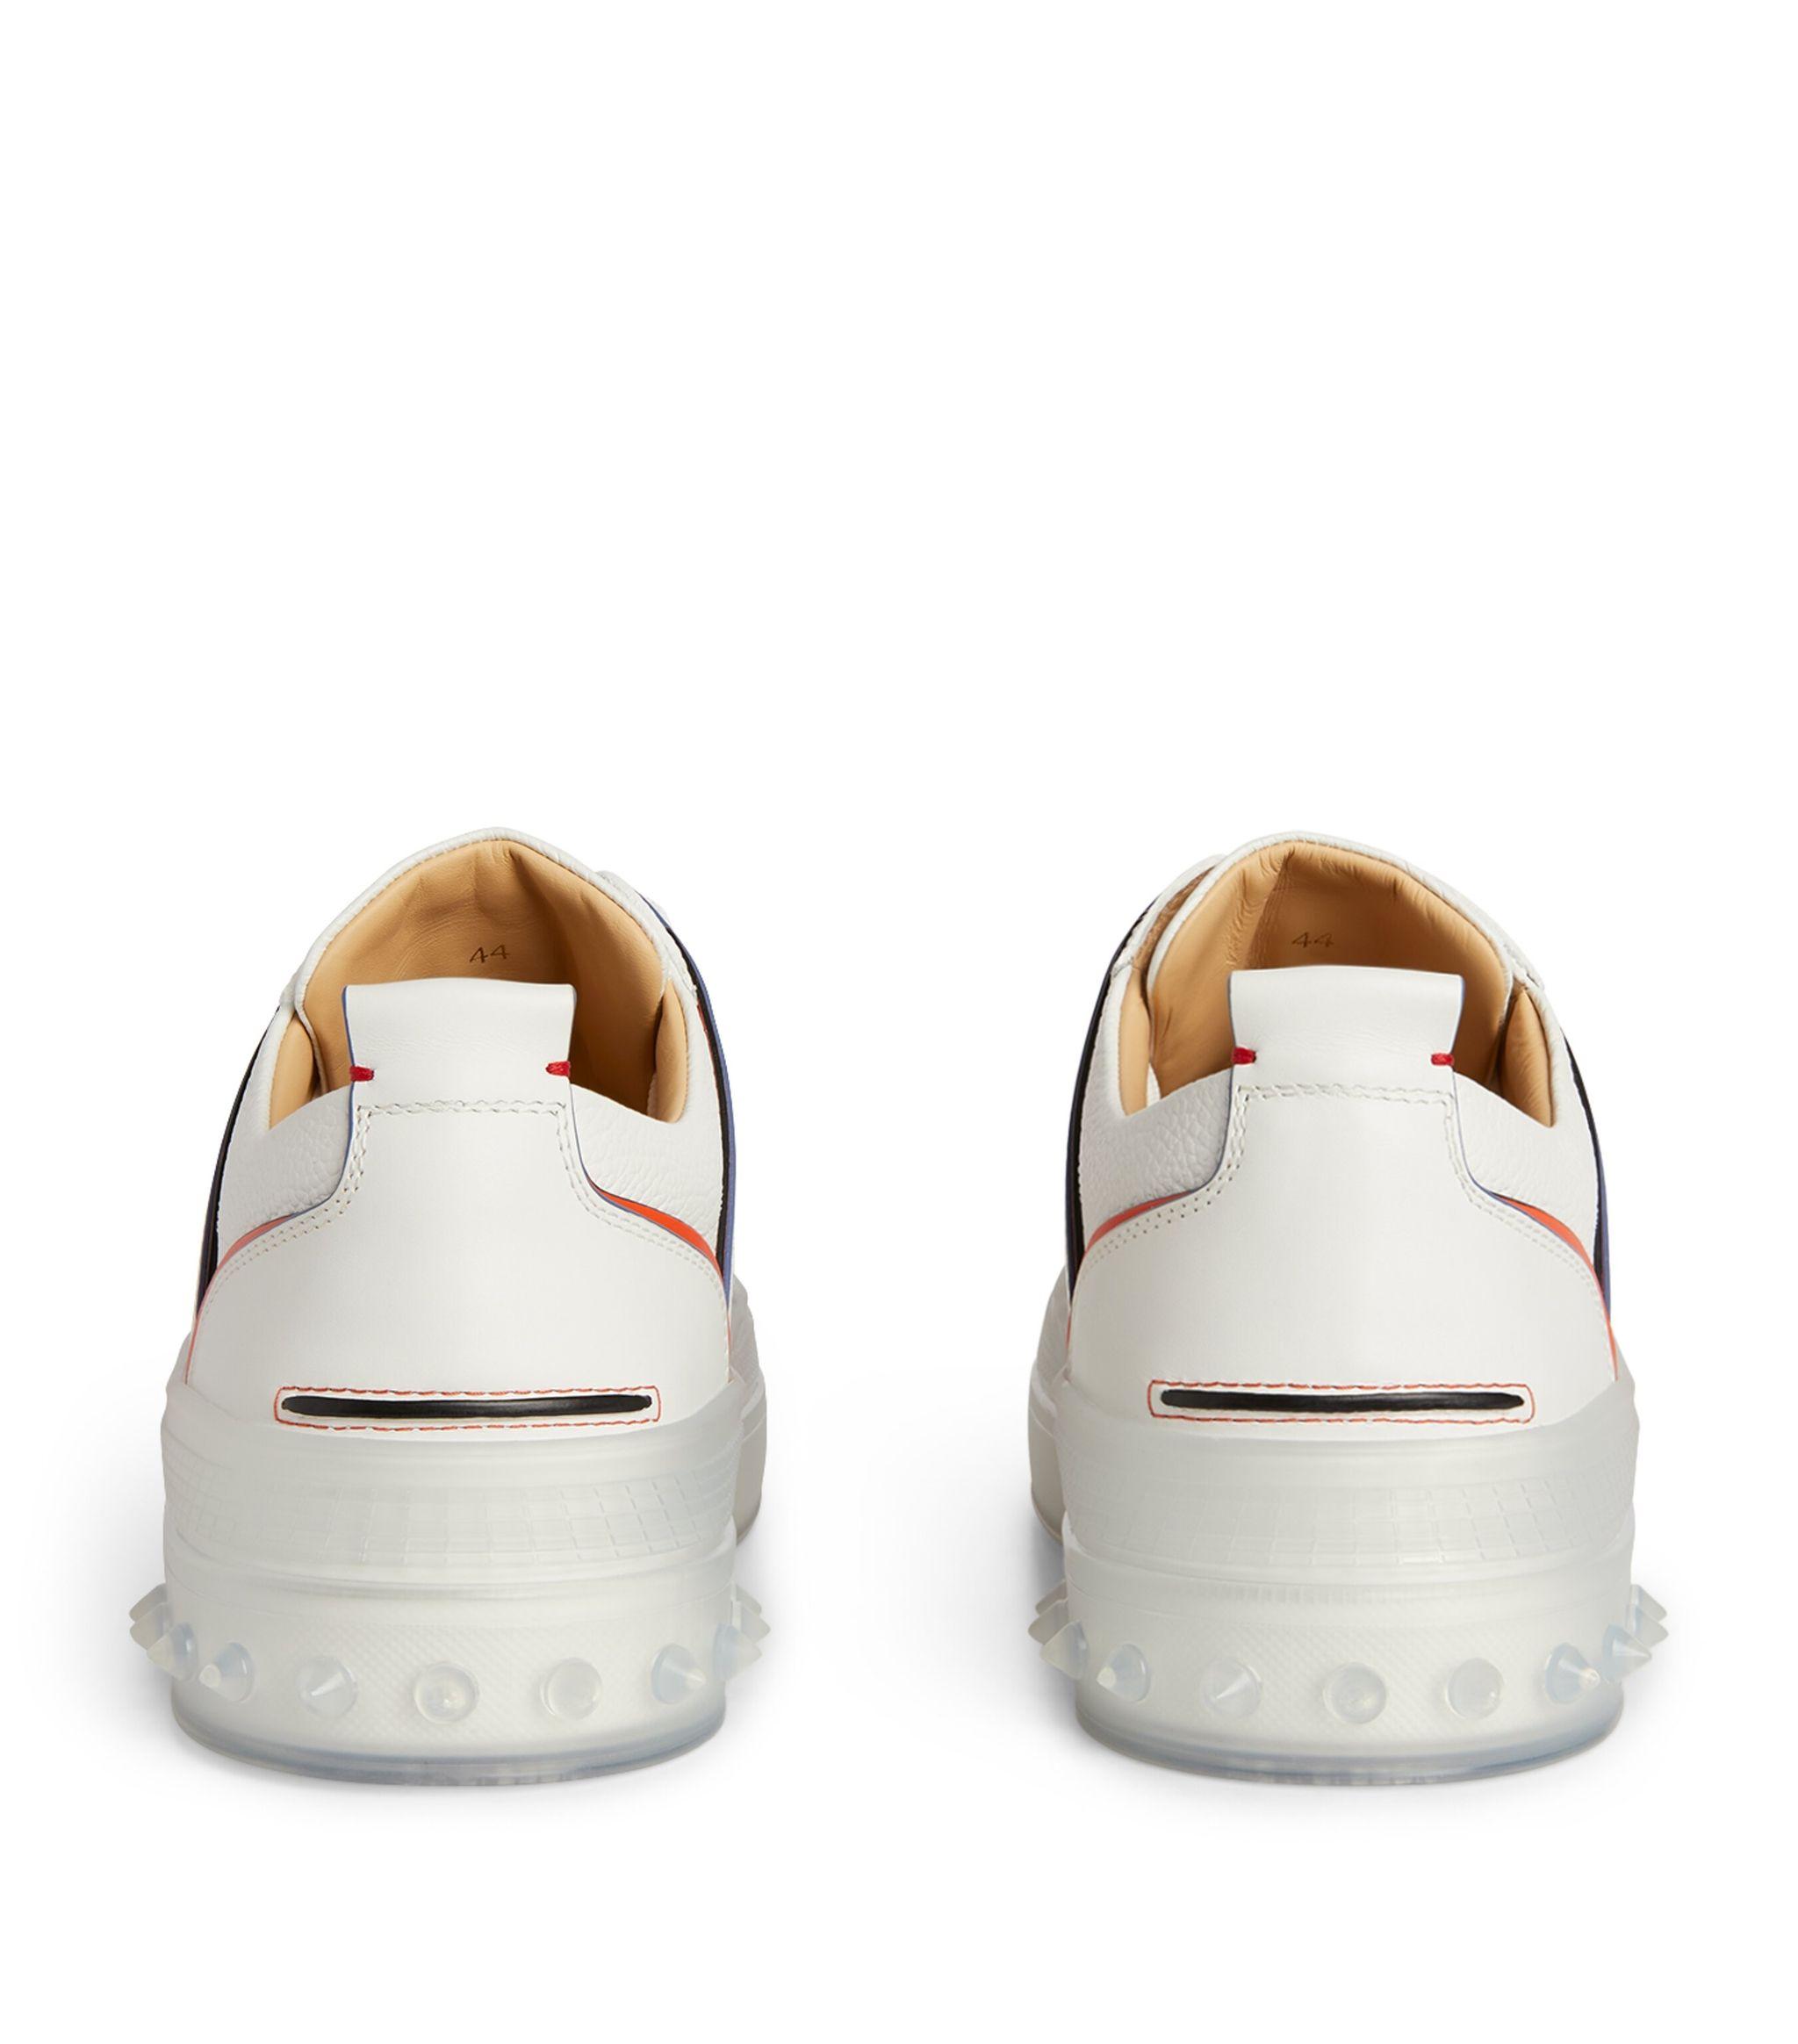 Christian Louboutin Leather Vida Viva Sneakers in White for Men - Lyst